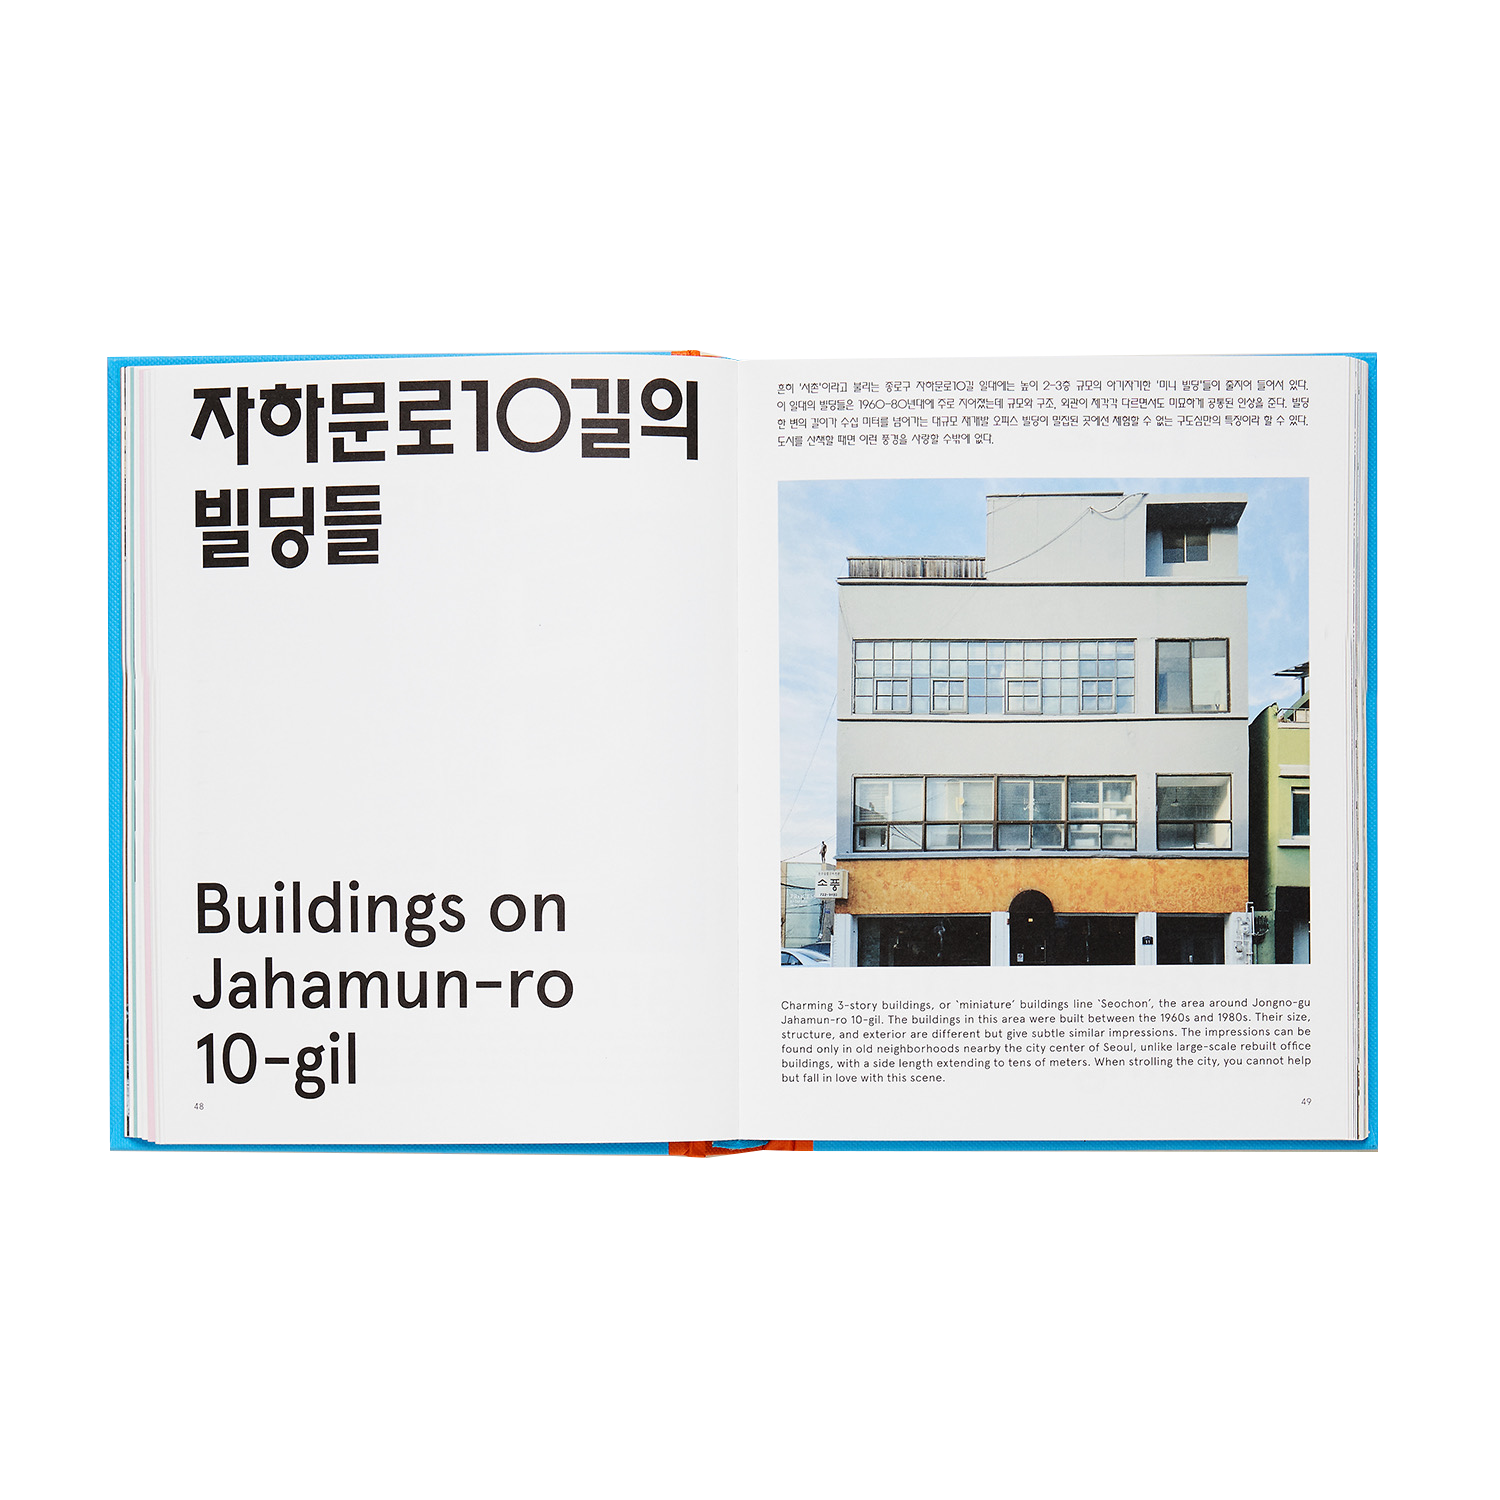 POETS &amp; PUNKS | ANJU &amp; BANJU (Korean Tapas Recipes and Story Book)